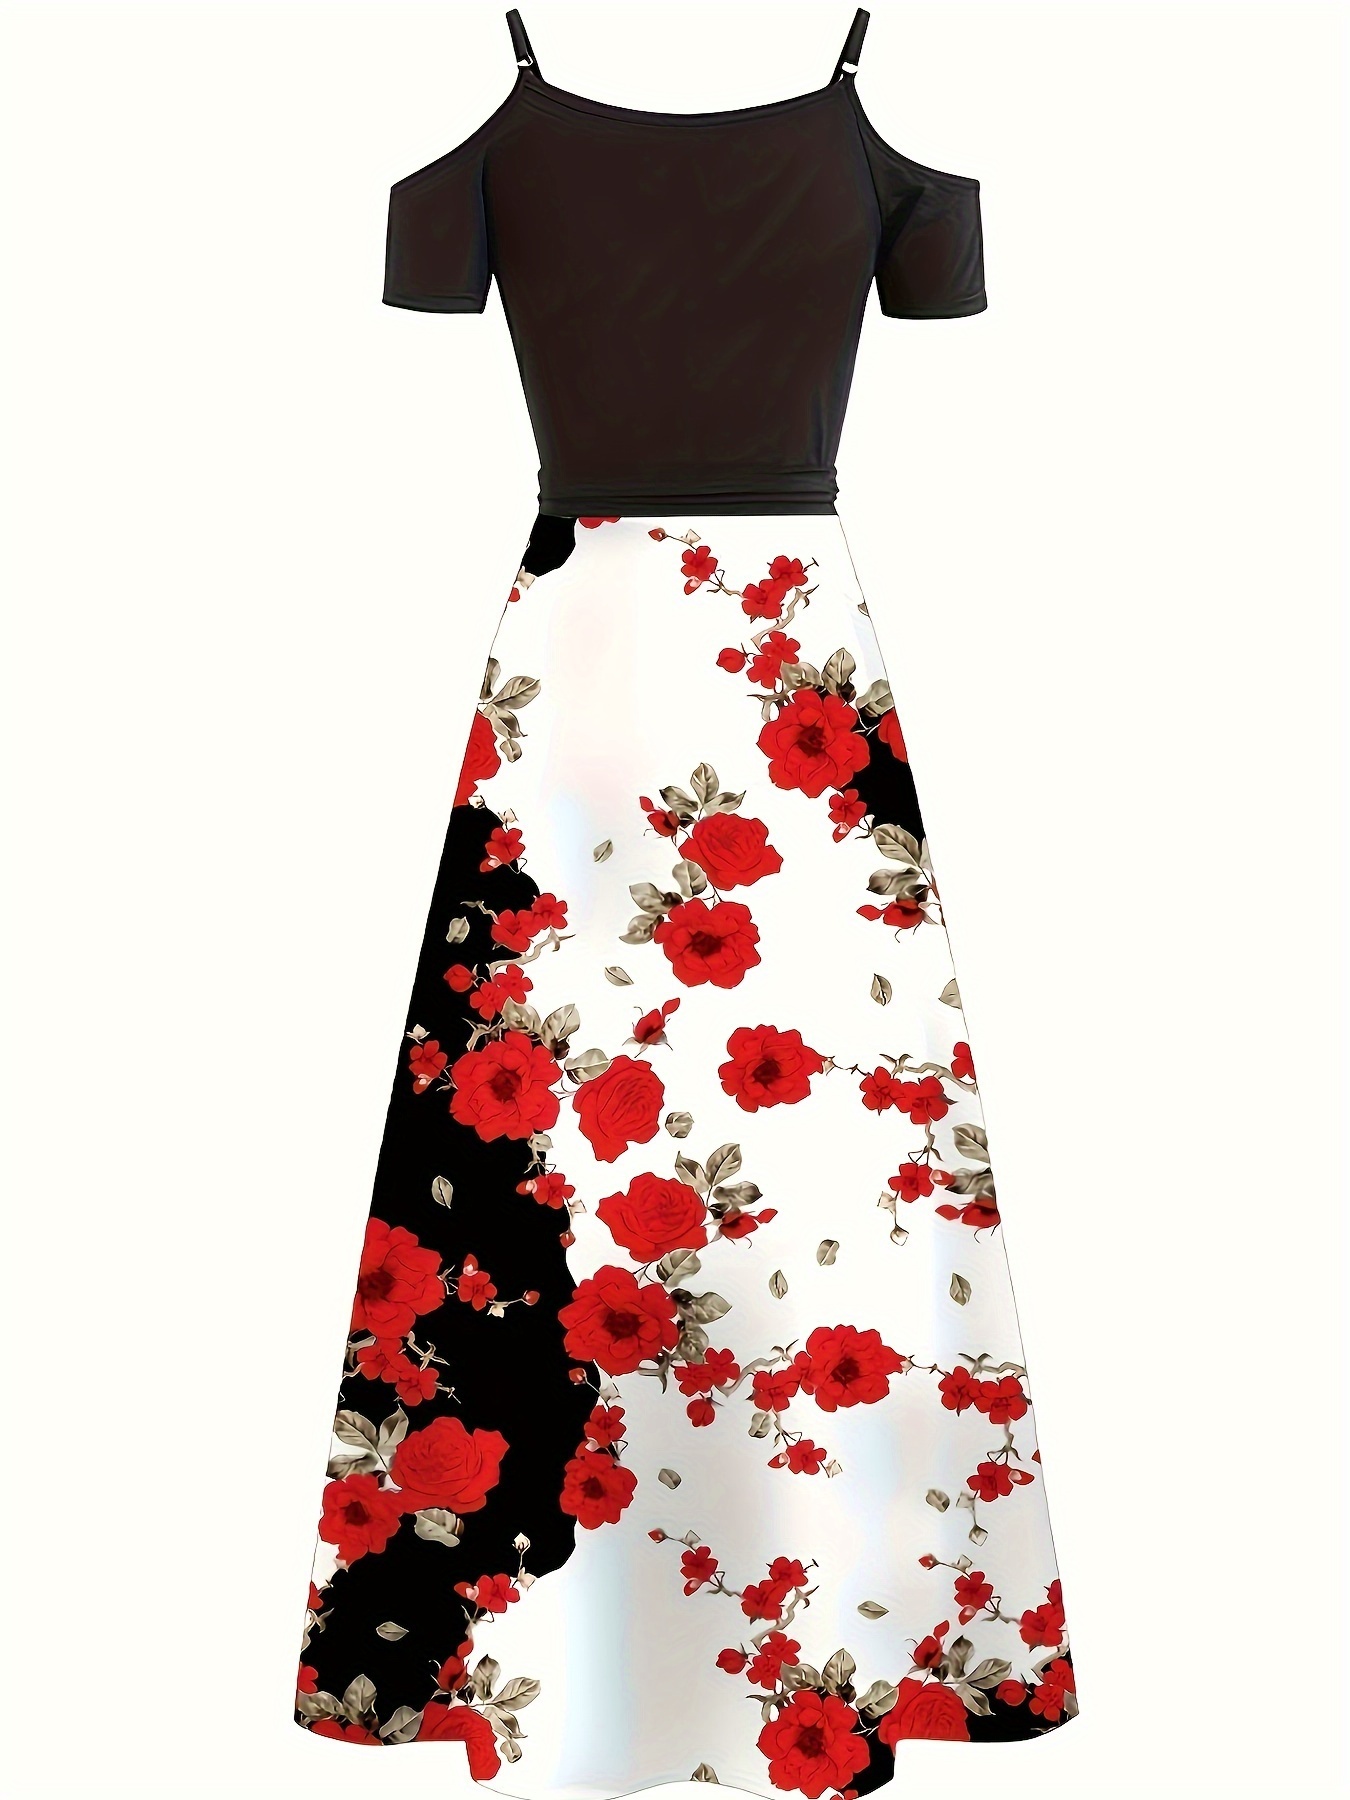 floral print cold shoulder dress elegant color block short sleeve maxi dress for summer womens clothing